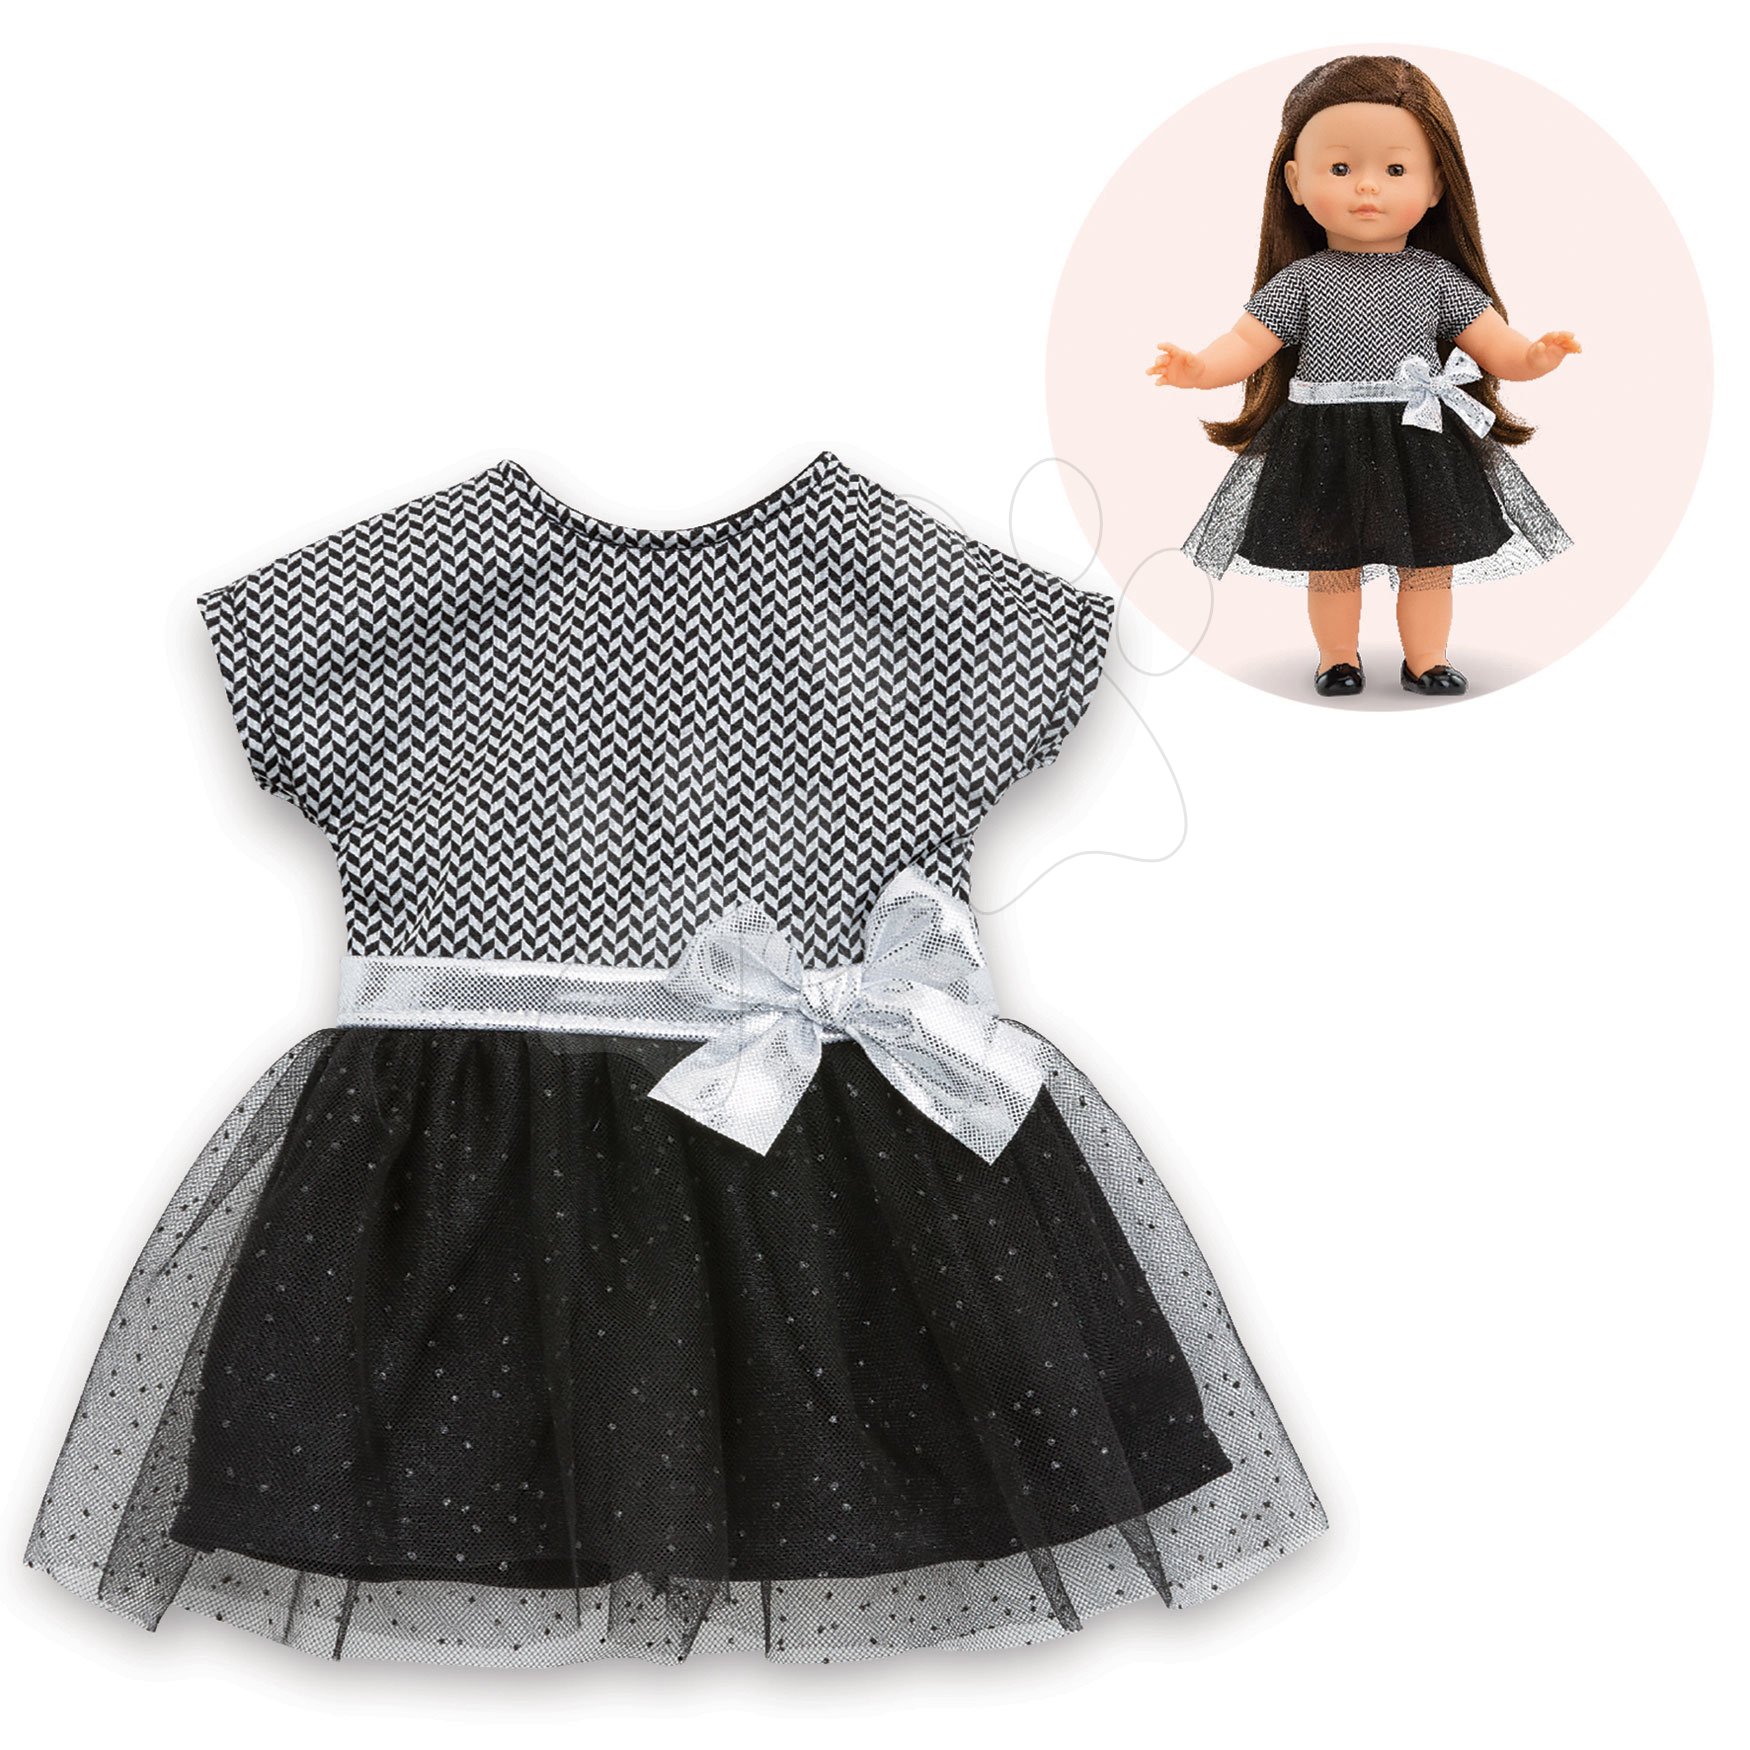 Ruhácska Evening Dress Black and Grey Ma Corolle 36 cm játékbabának 4 évtől